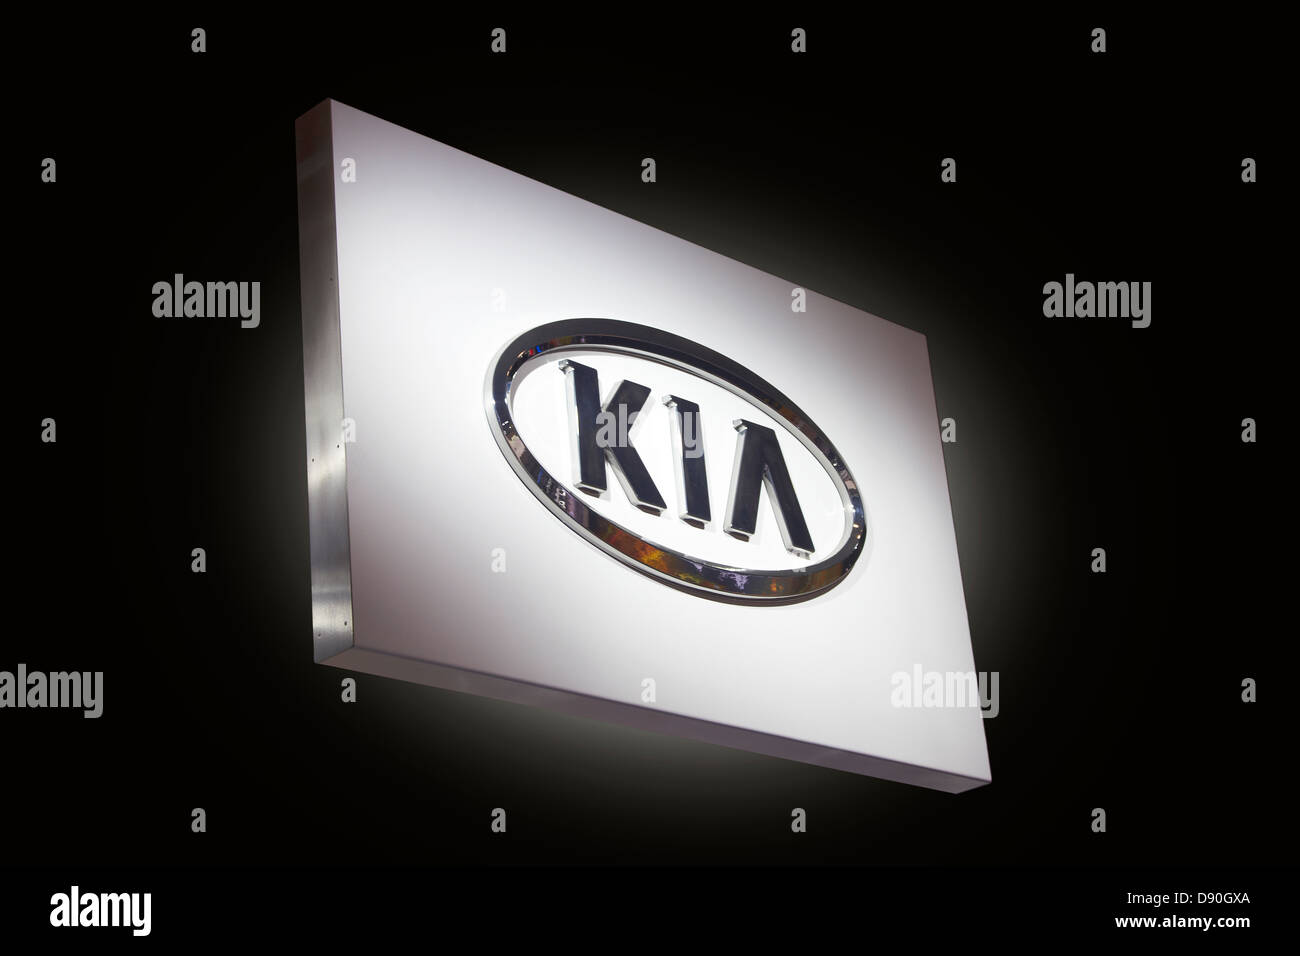 Kia Automobile logo Stock Photo